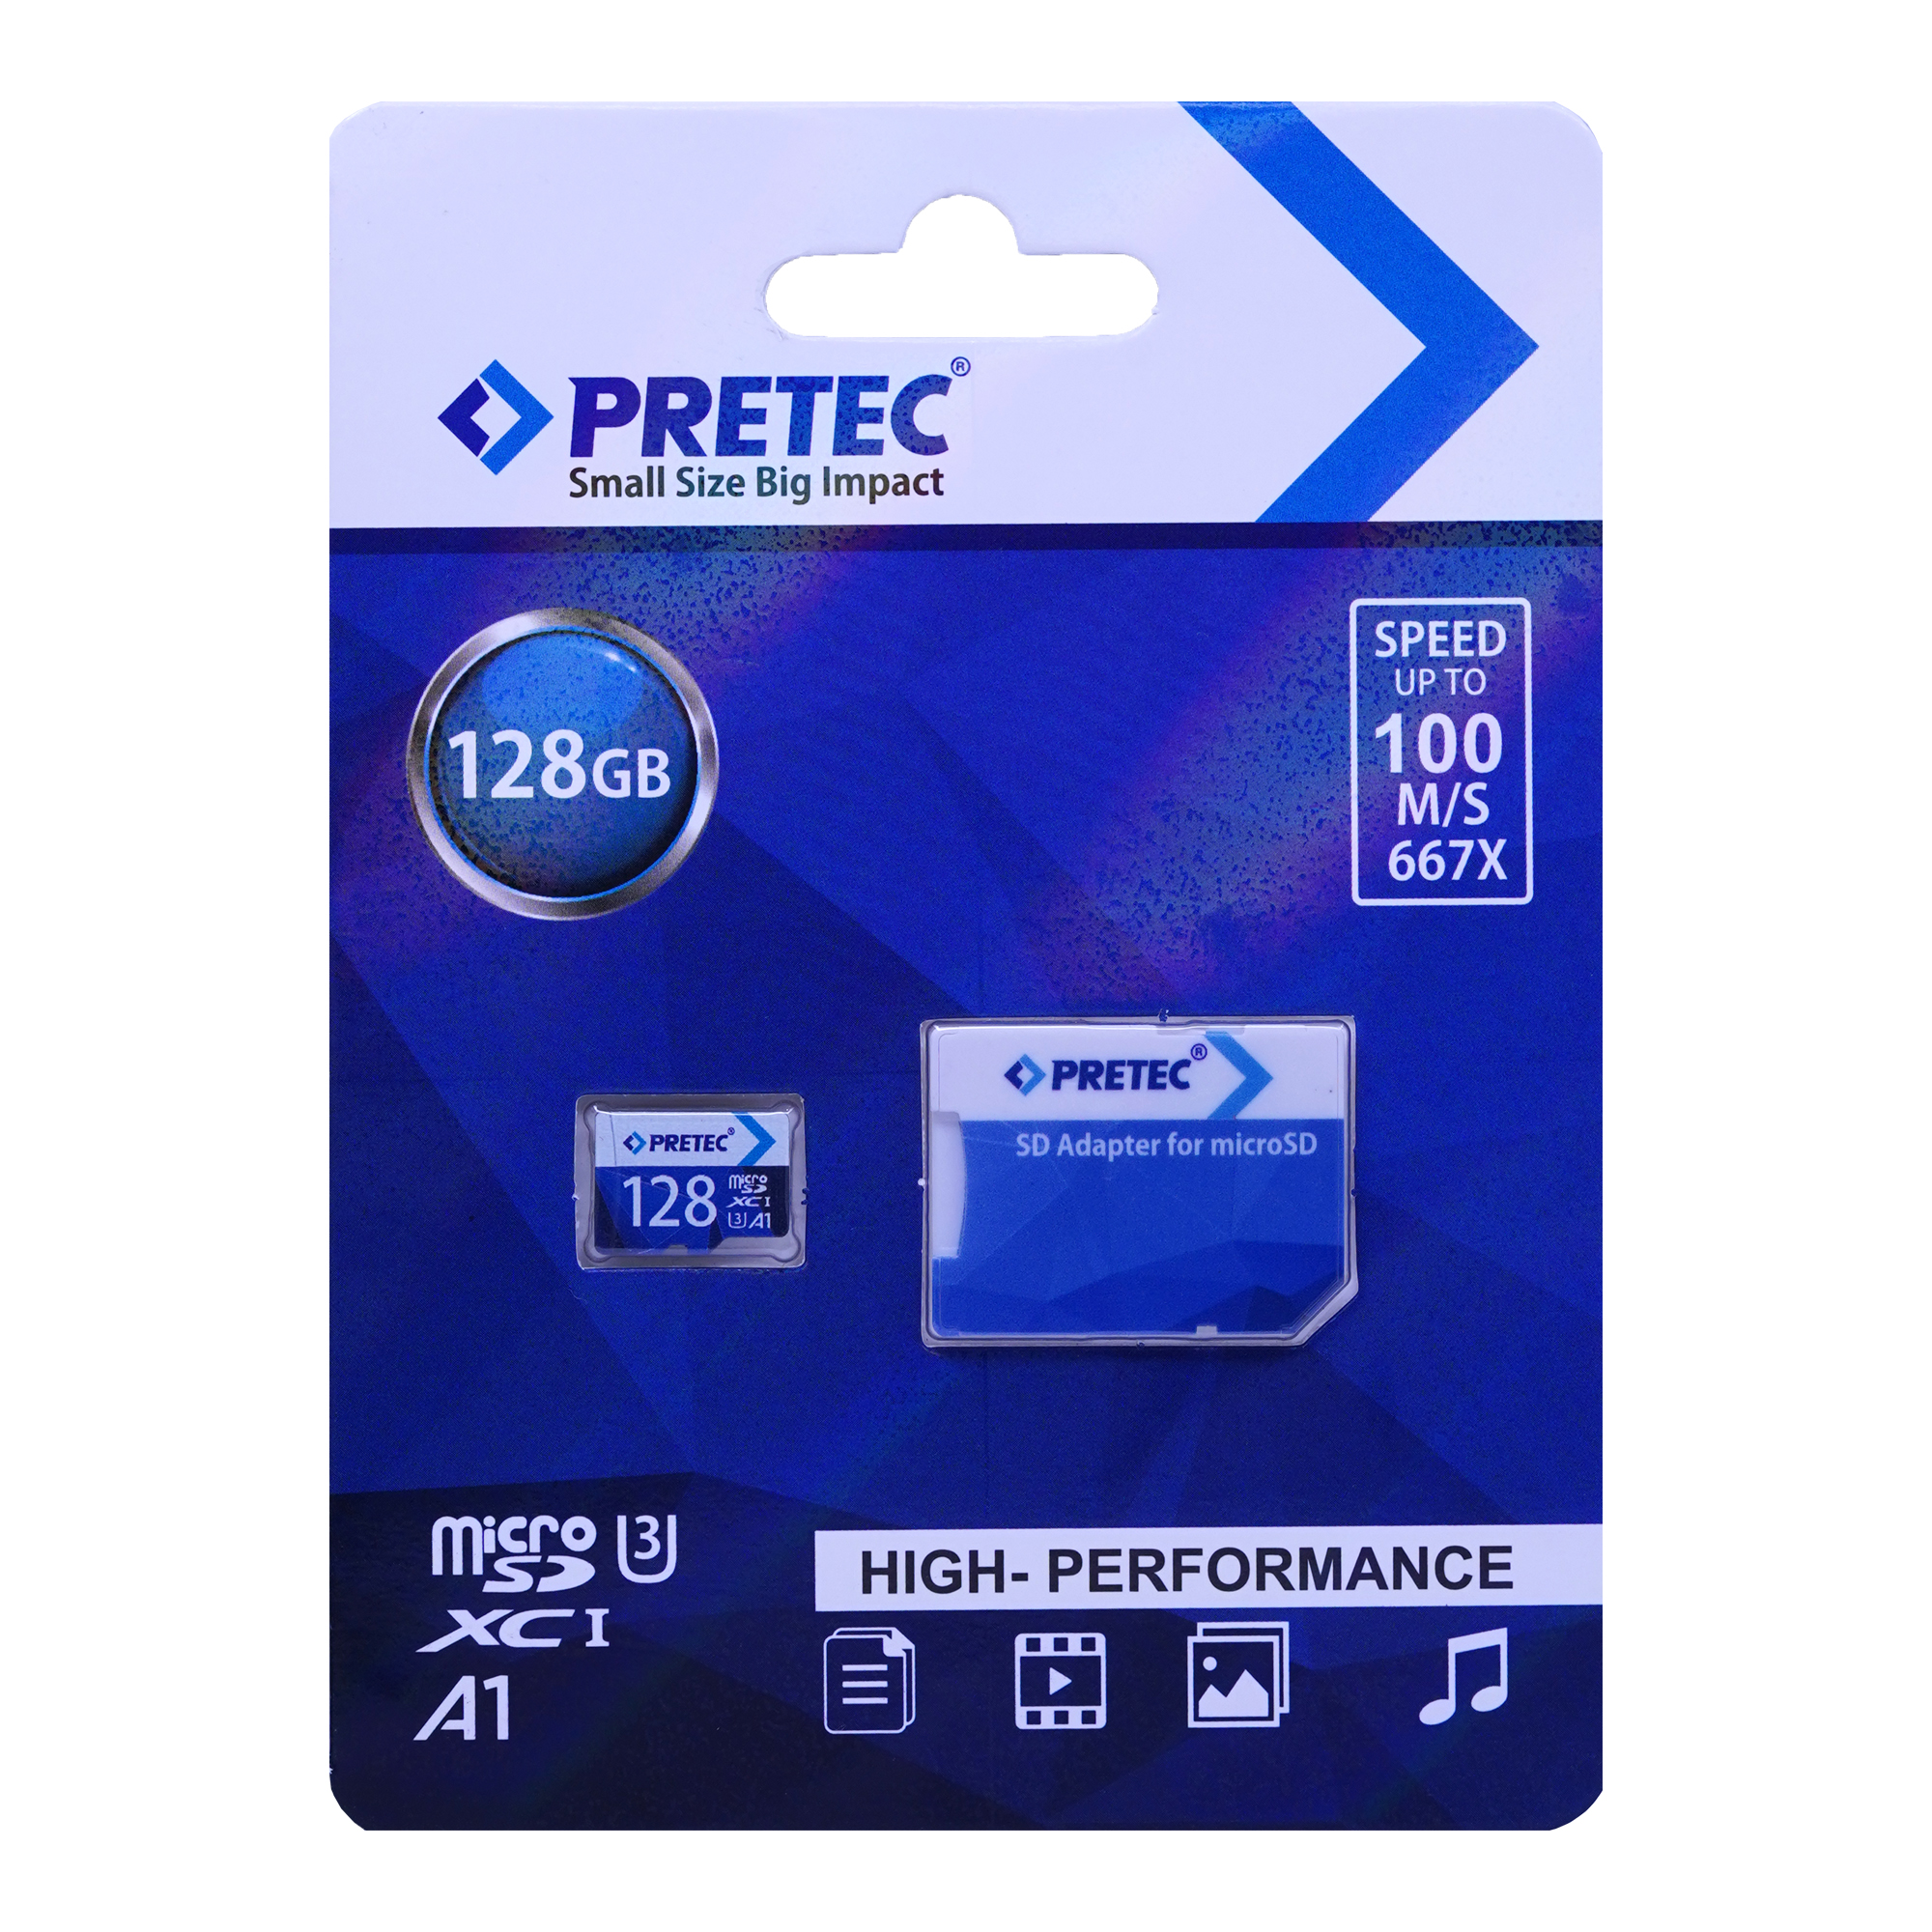 کارت حافظه microSDXC پریتک مدل small کلاس 10 استاندارد UHS-I U3 سرعت 100MBps ظرفیت 128 گیگابایت به همراه آداپتور